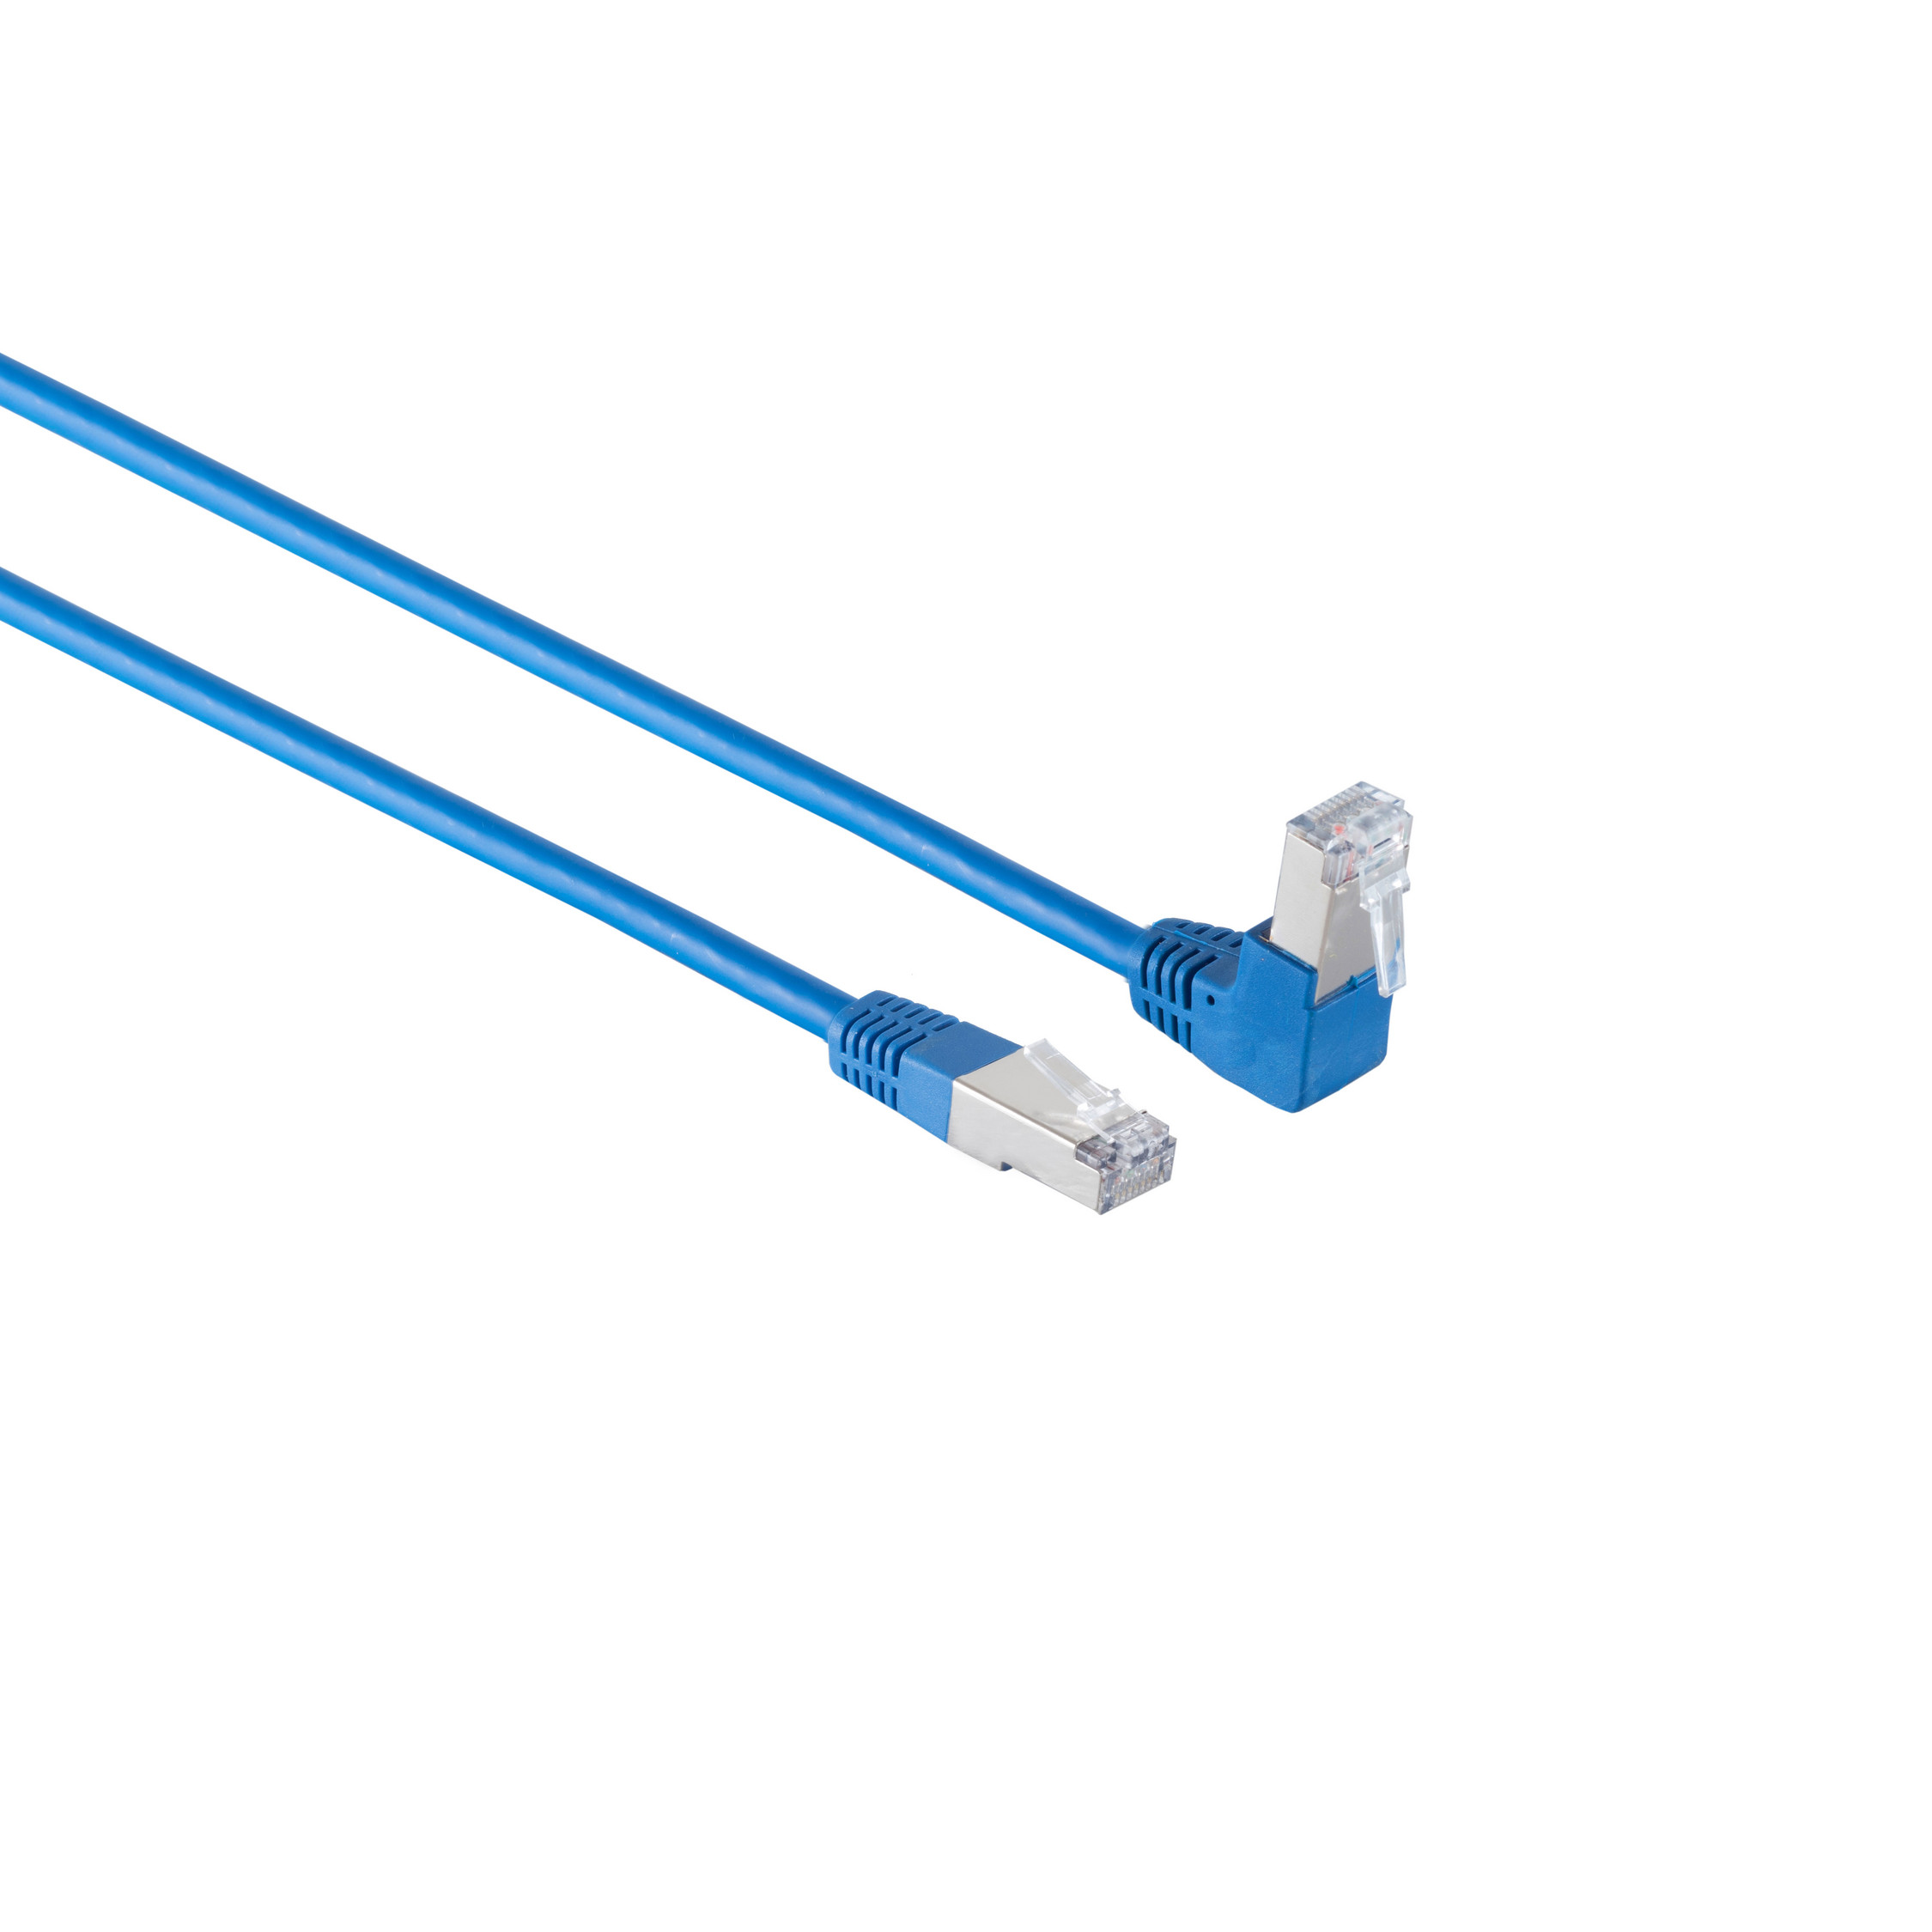 PIMF KABELBUDE S/FTP Winkel-gerade cat 0,25m, RJ45, Kabel 0,25 m 6 Patchkabel blau